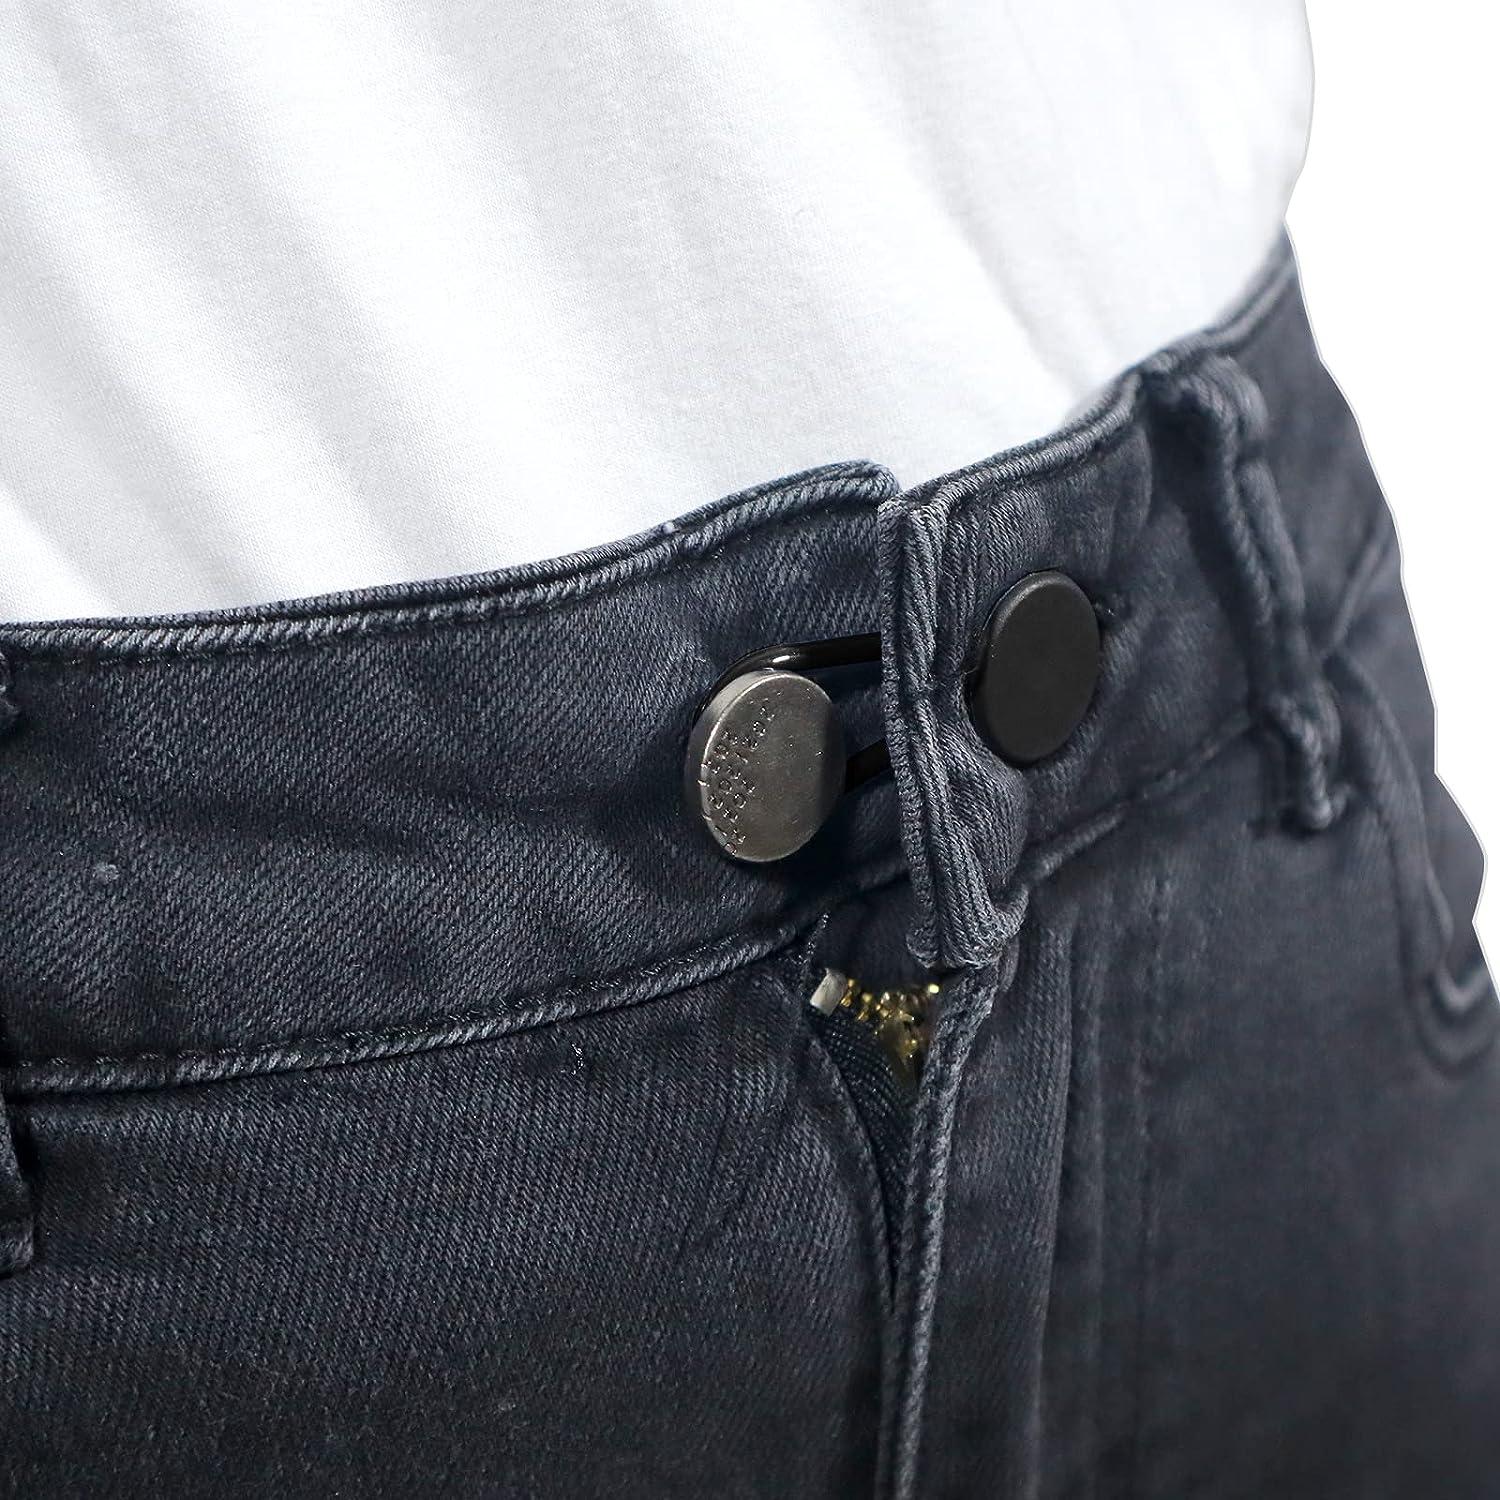  YuGtcen Button Extenders for Jeans Pants, 12pcs Pant